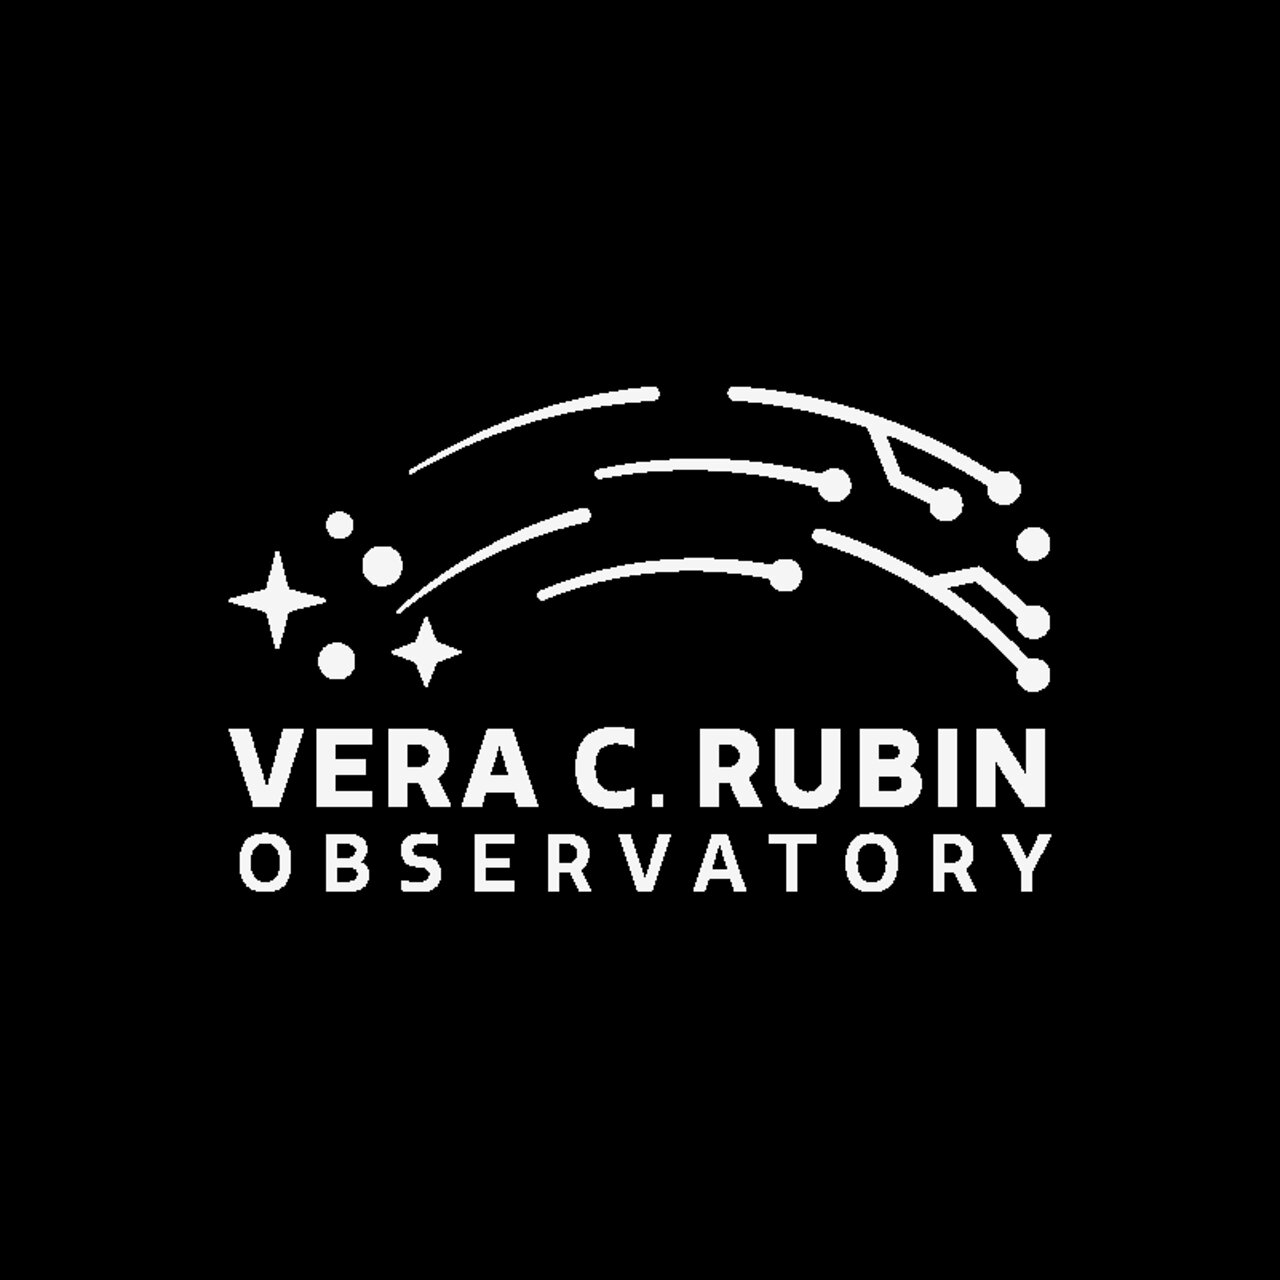 Logo: Vera C Rubin Observatory - Light gray